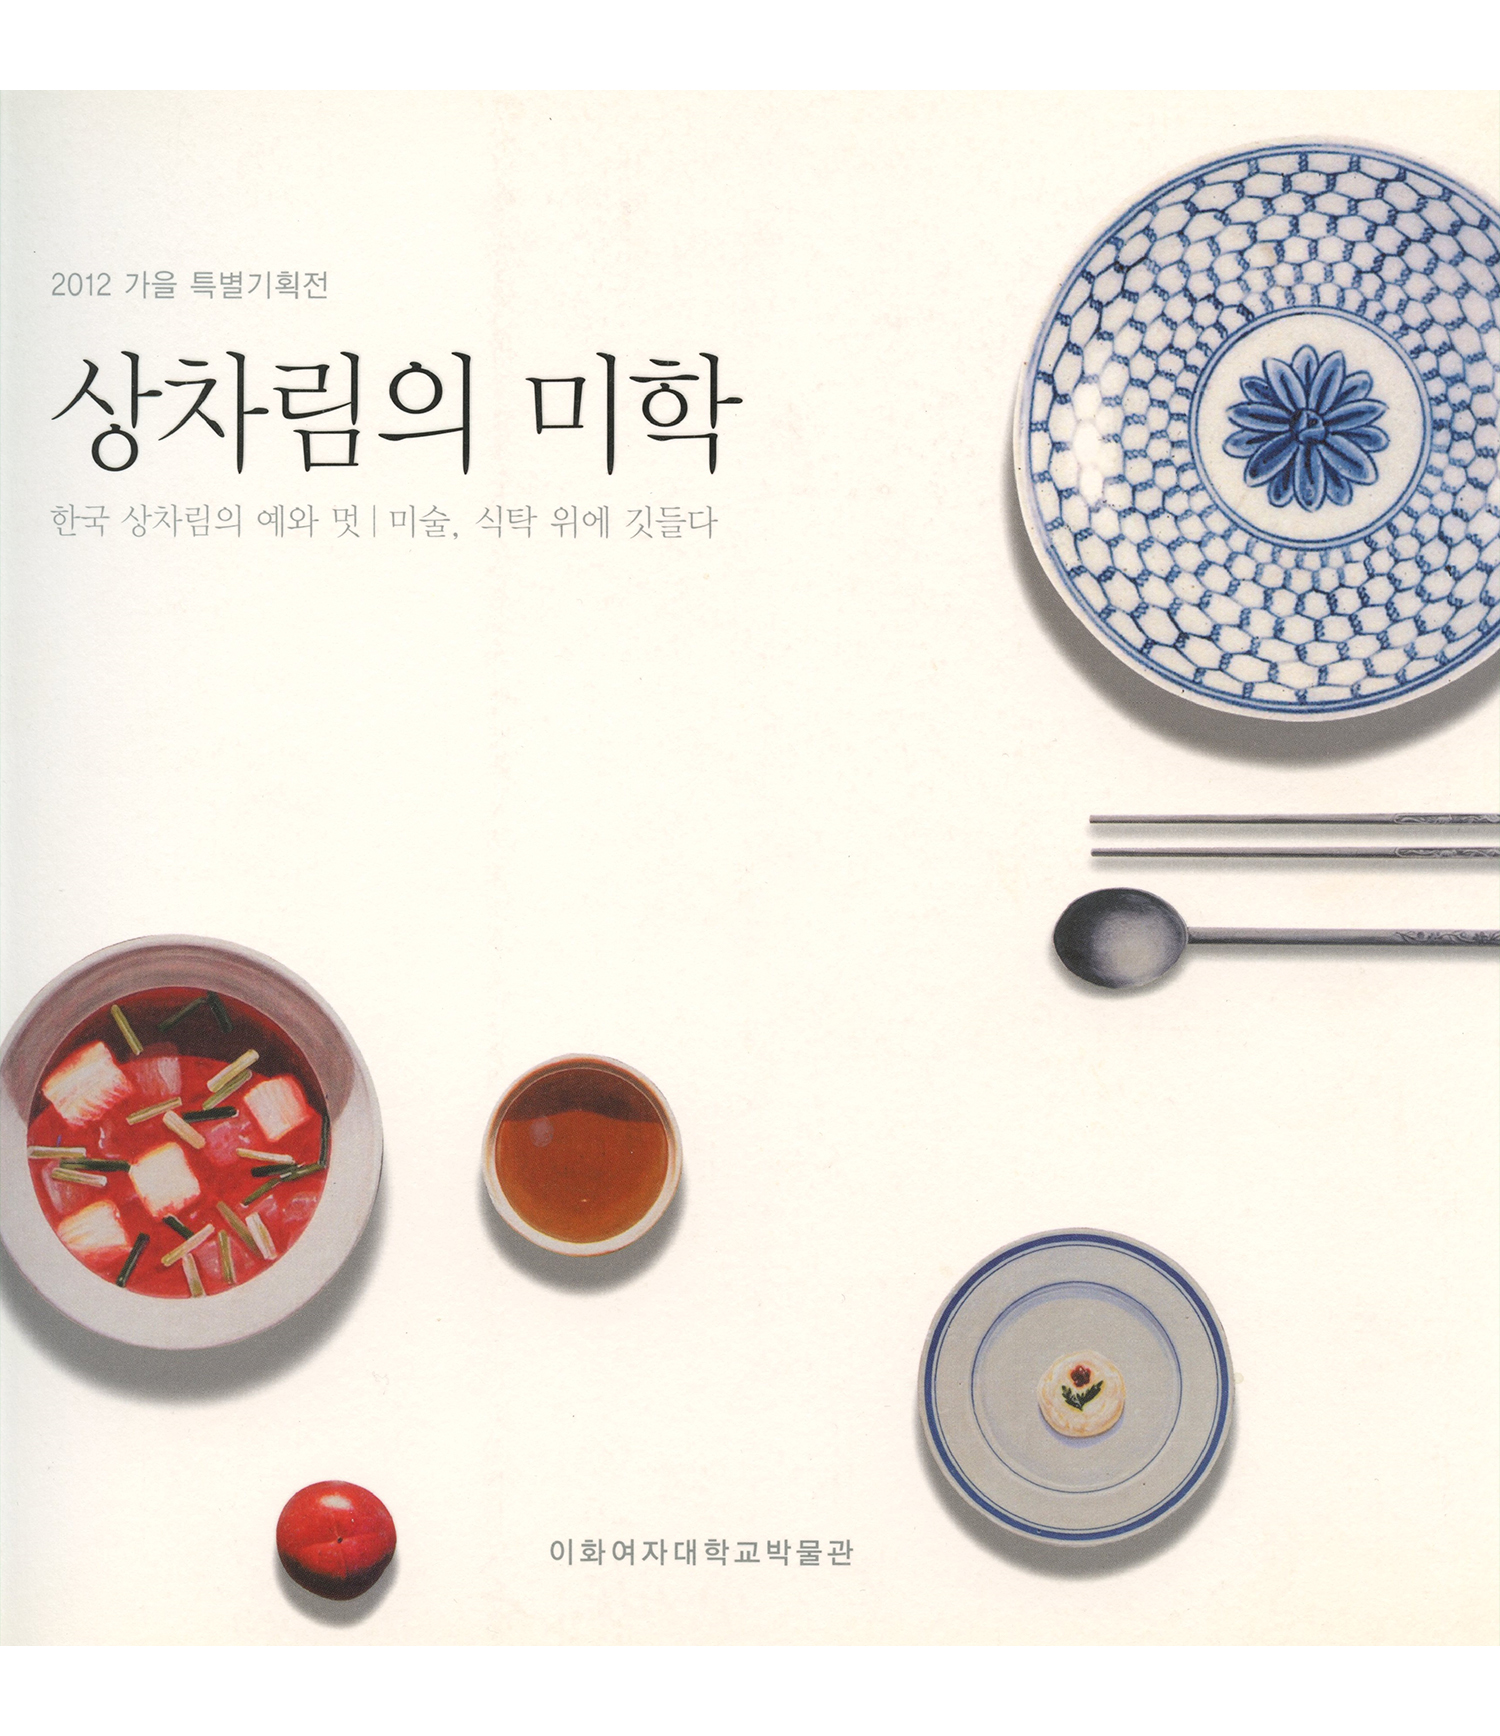 상차림의 미학 – 한국 상차림의 예와 멋·미술, 식탁 위에 깃들다